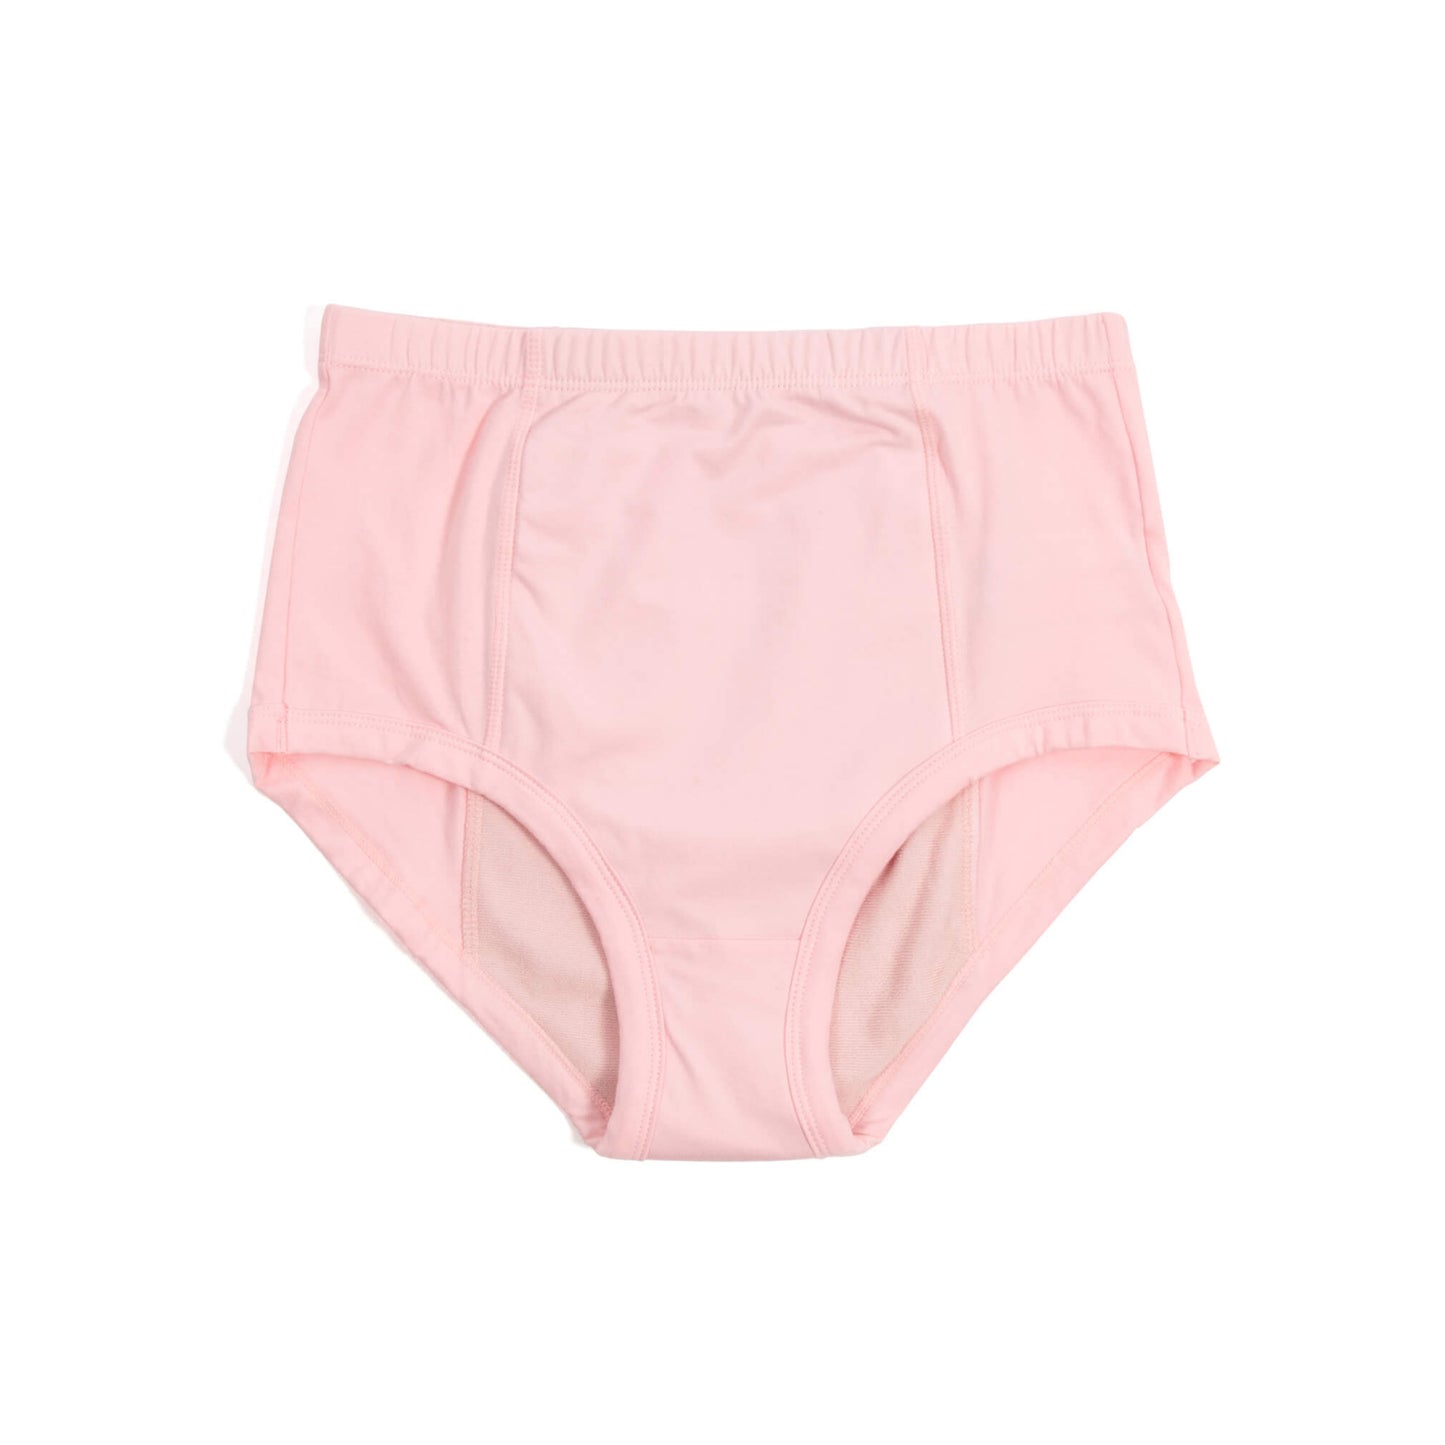 Conni Ladies Classic Underwear (1)